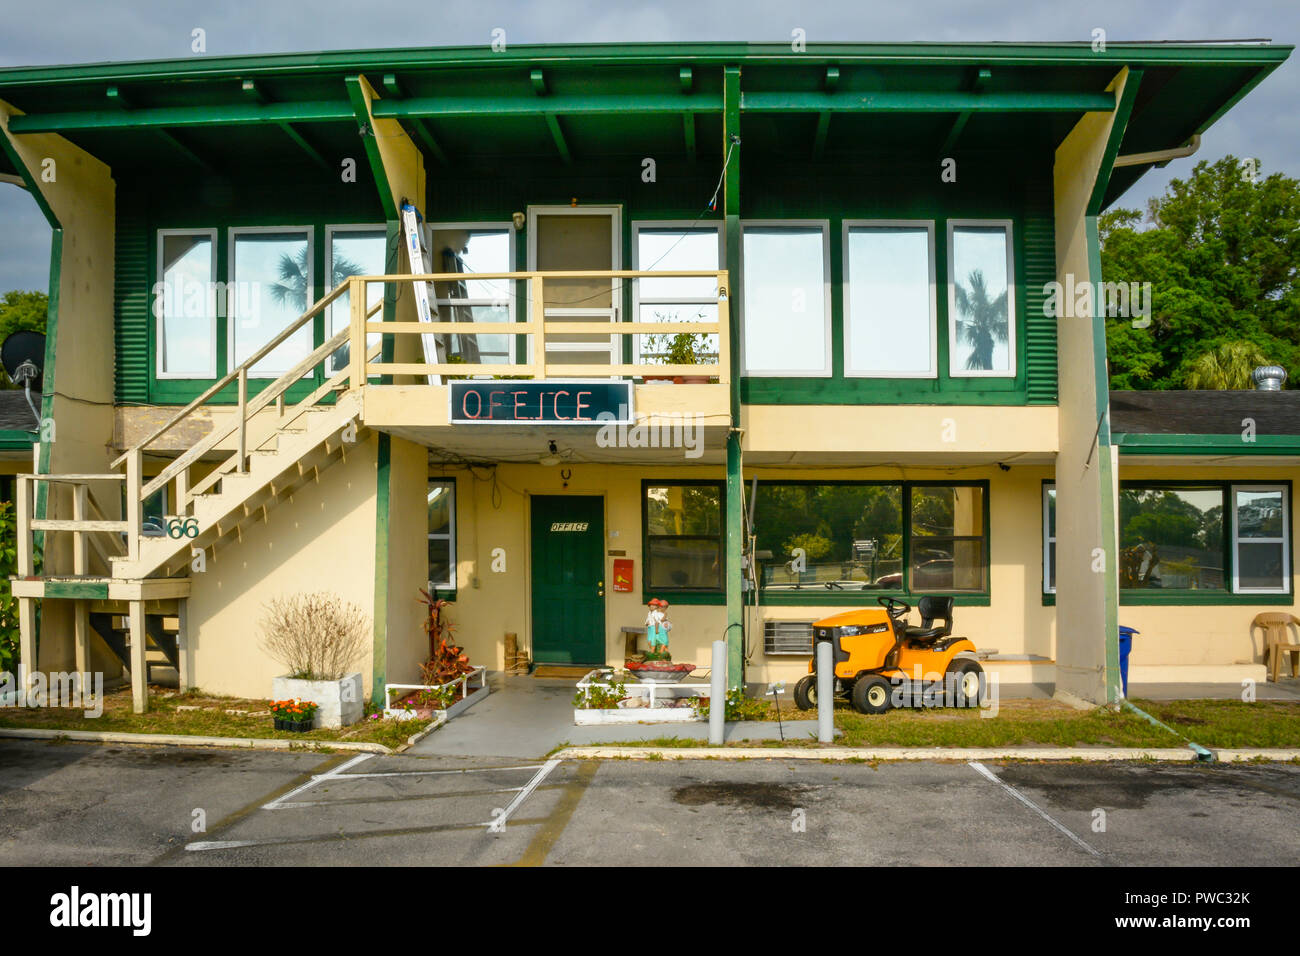 A metà secolo e in stile Motel Withlacoochee in Ingis, FL, ingresso anteriore segni e costruire Sulla Florida Panhandle, culturalmente noto come vecchia Florida Foto Stock